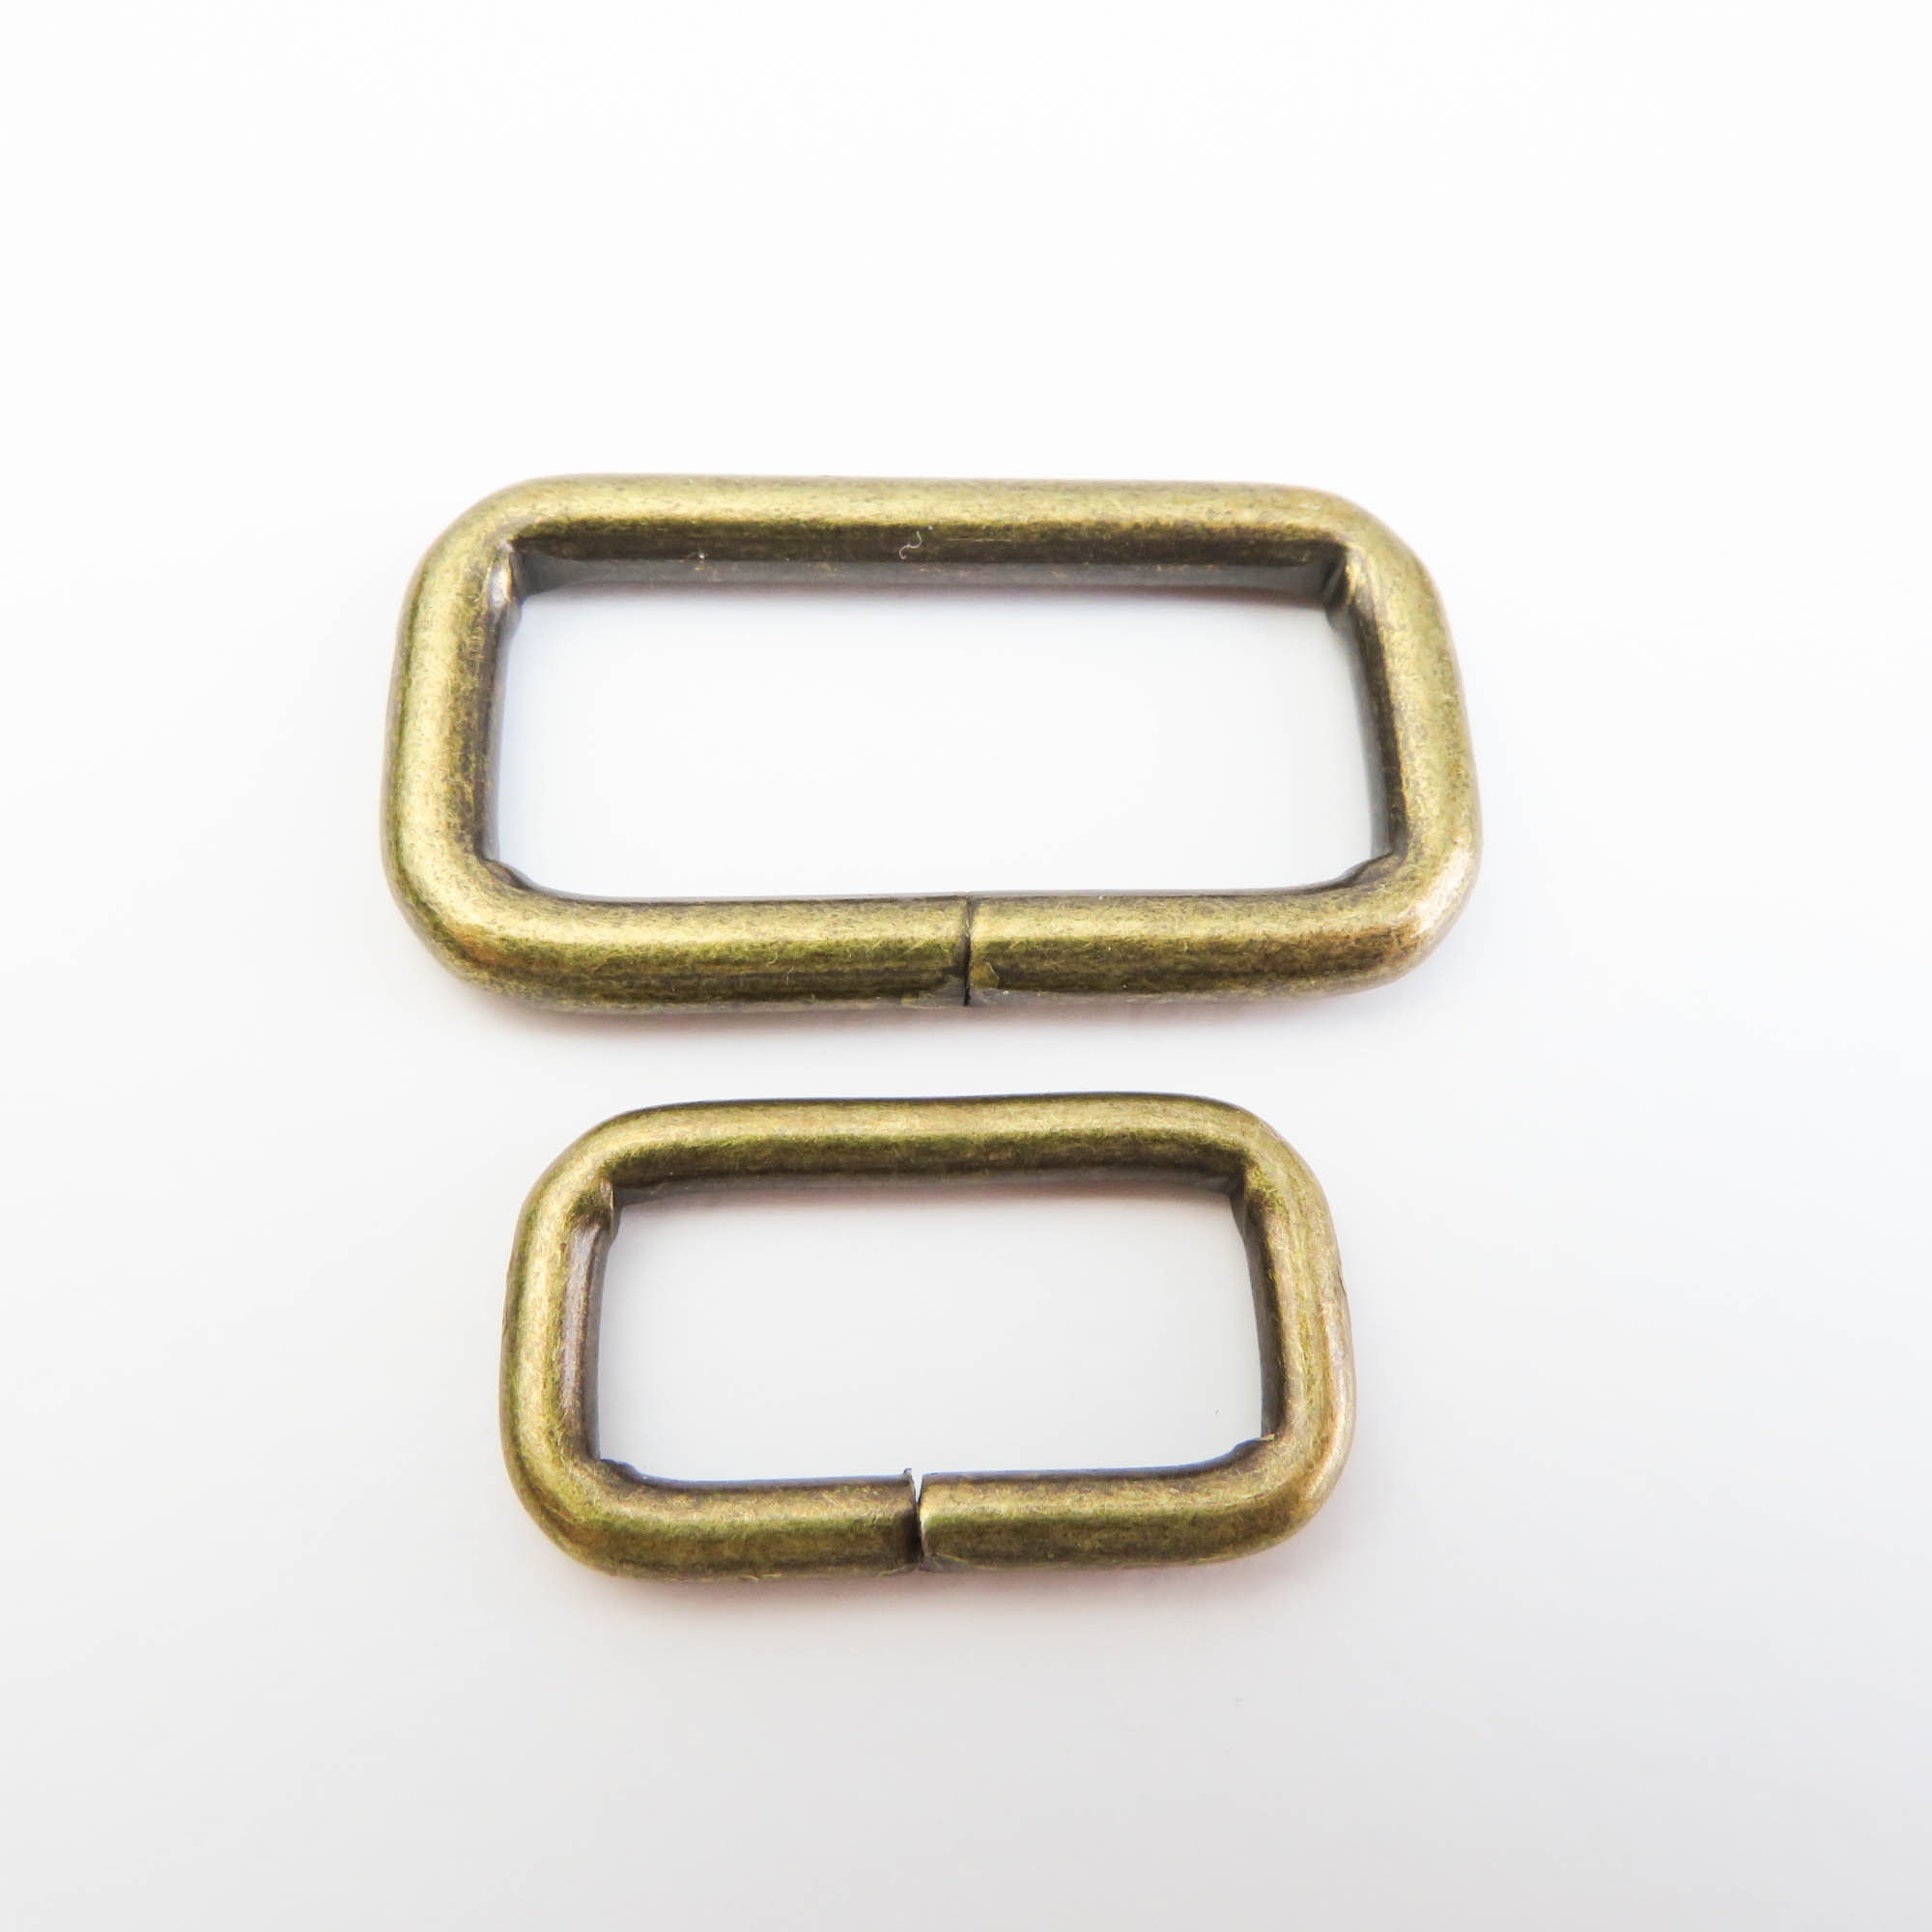 Rectangle Strap Keeper Split Loop Slide Buckle Jump Rings Bag | Etsy